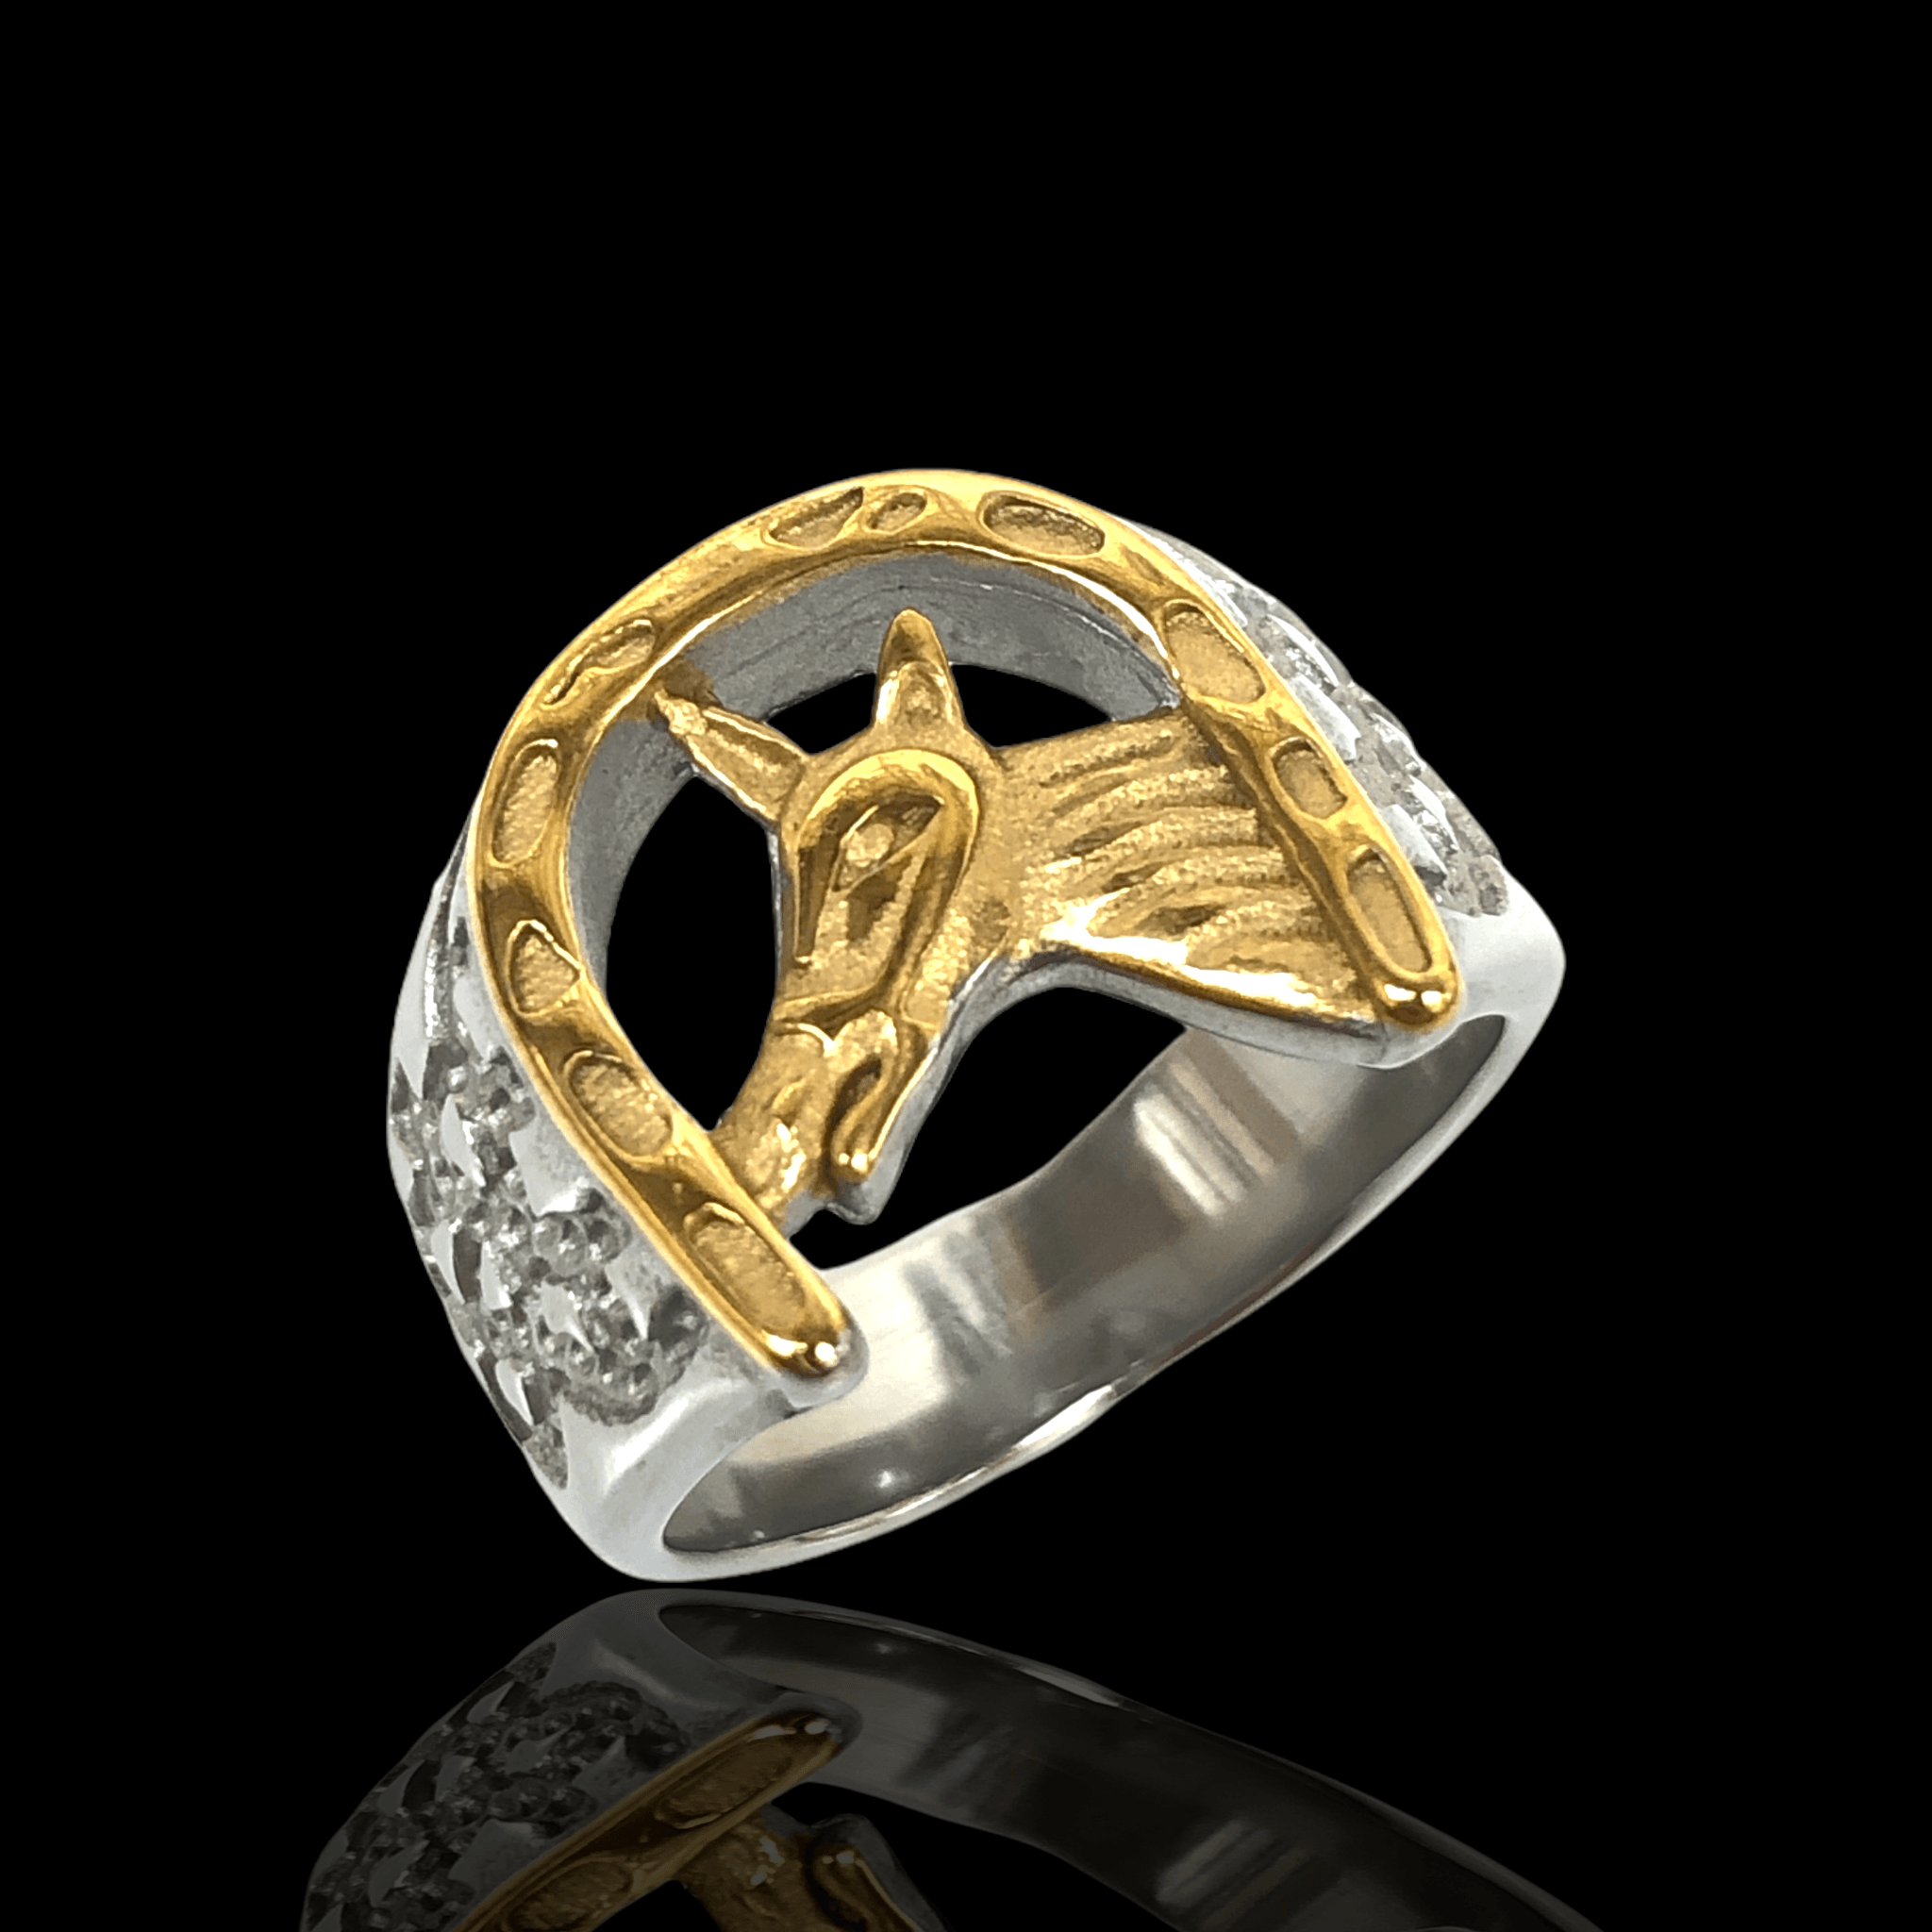 OLRA 0036 -18K Gold Filled Oro Laminado - KUANIA